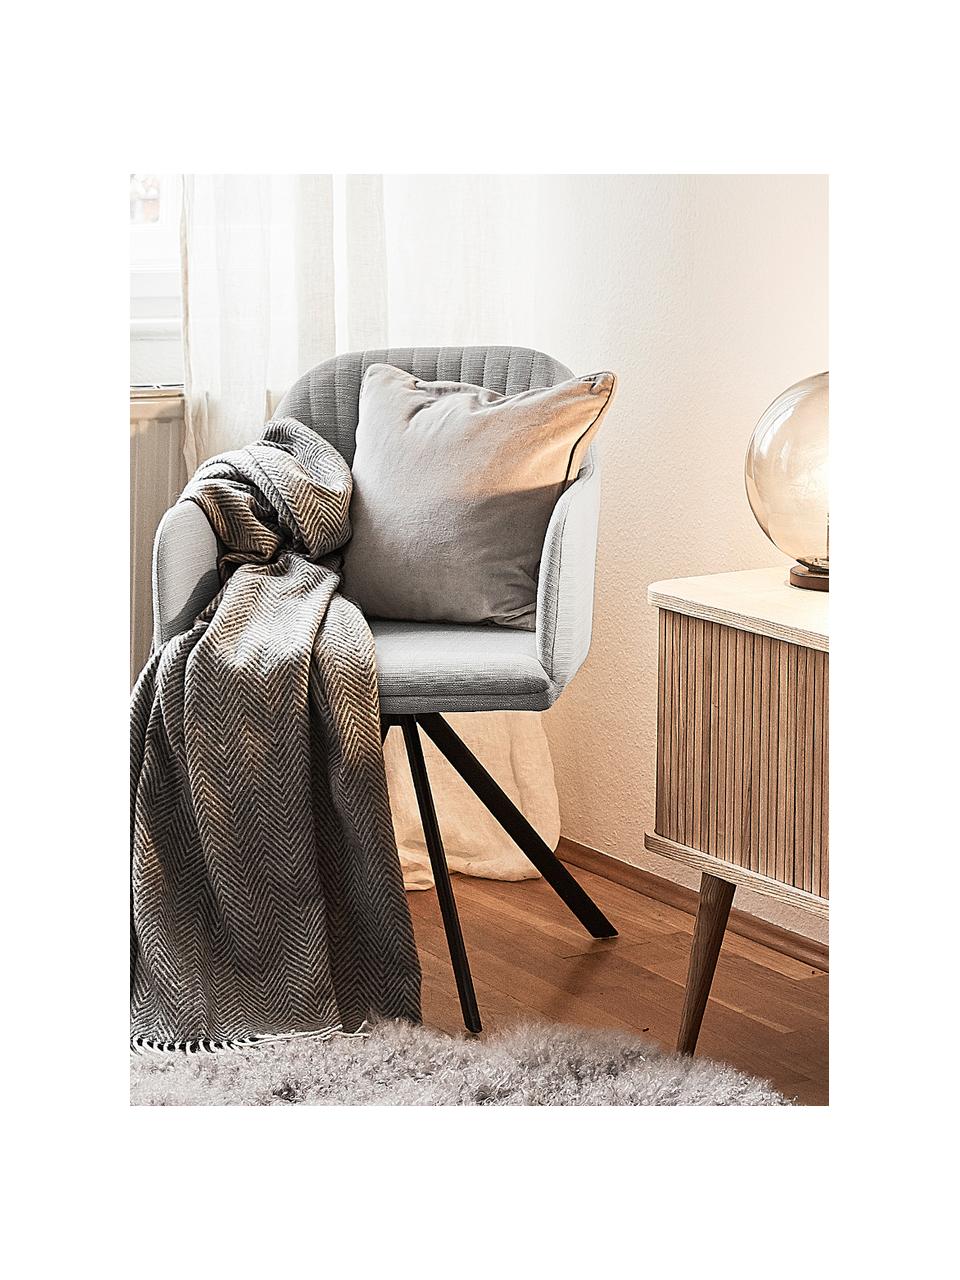 Čalúnená otočná stolička s opierkami Lola, Sivá, nohy čierna, Š 58 x H 53 cm